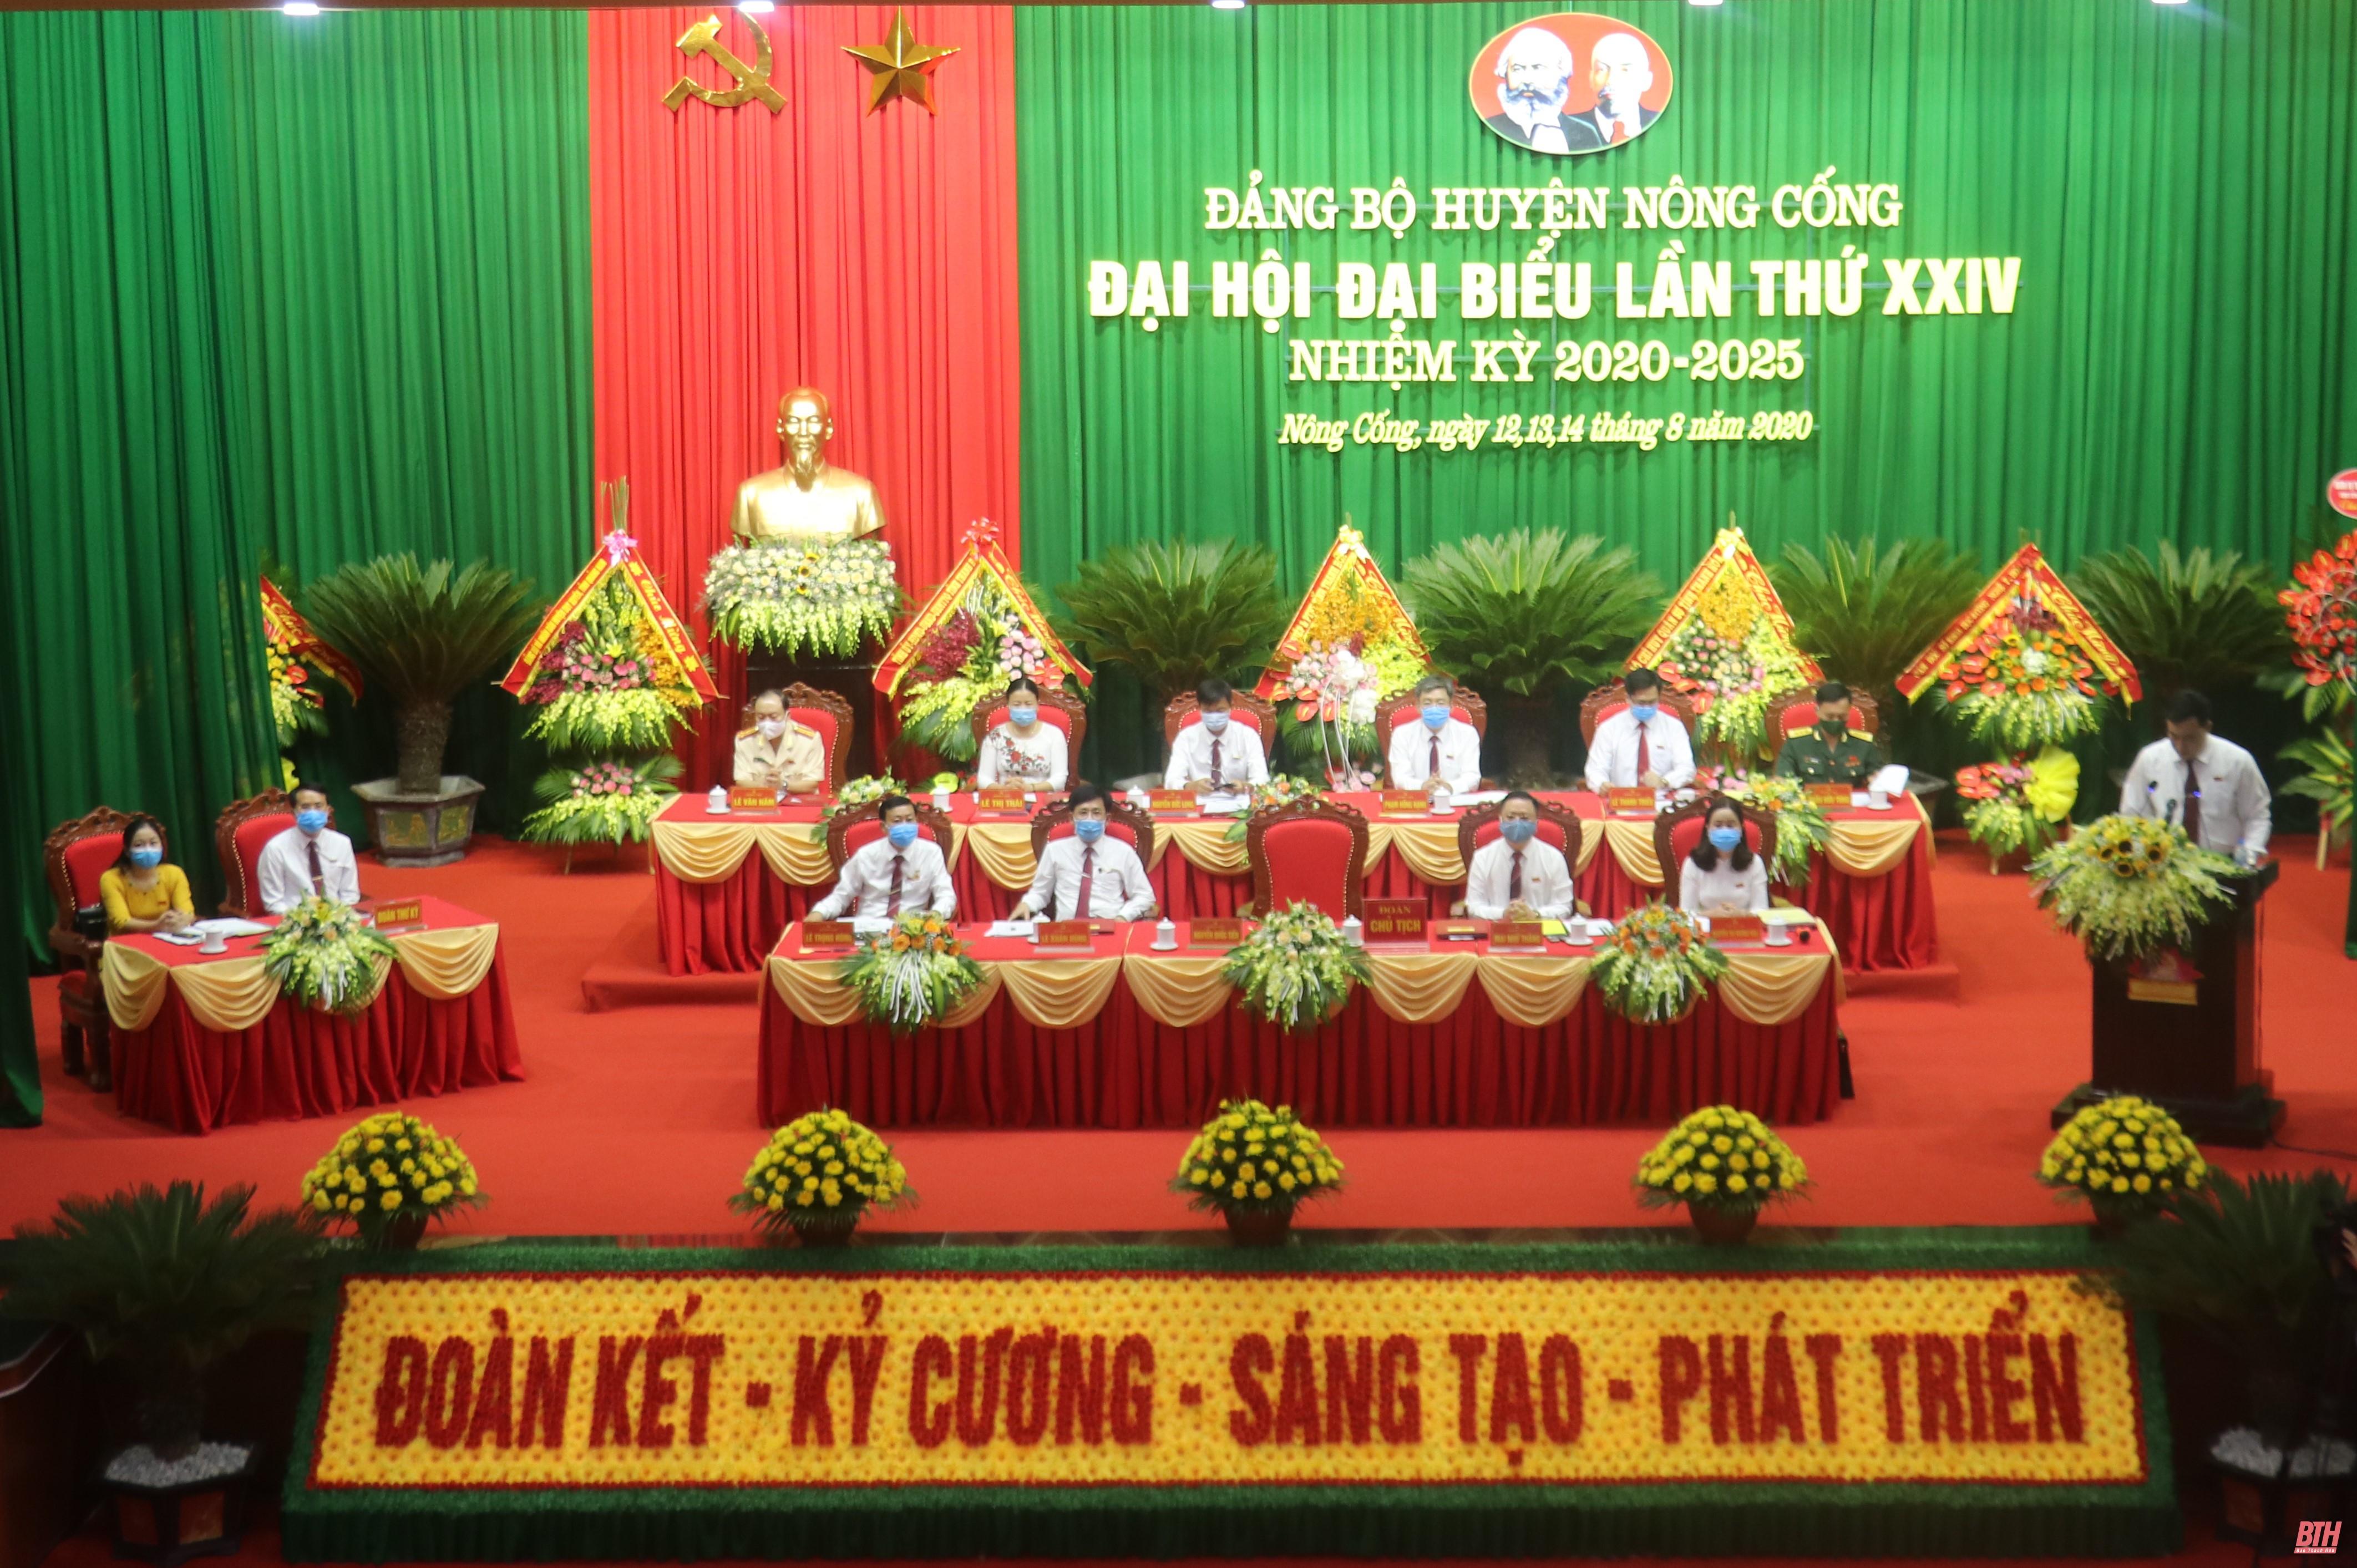 Đồng chí Nguyễn Quốc Tiến tái đắc cử Bí thư huyện ủy Nông Cống